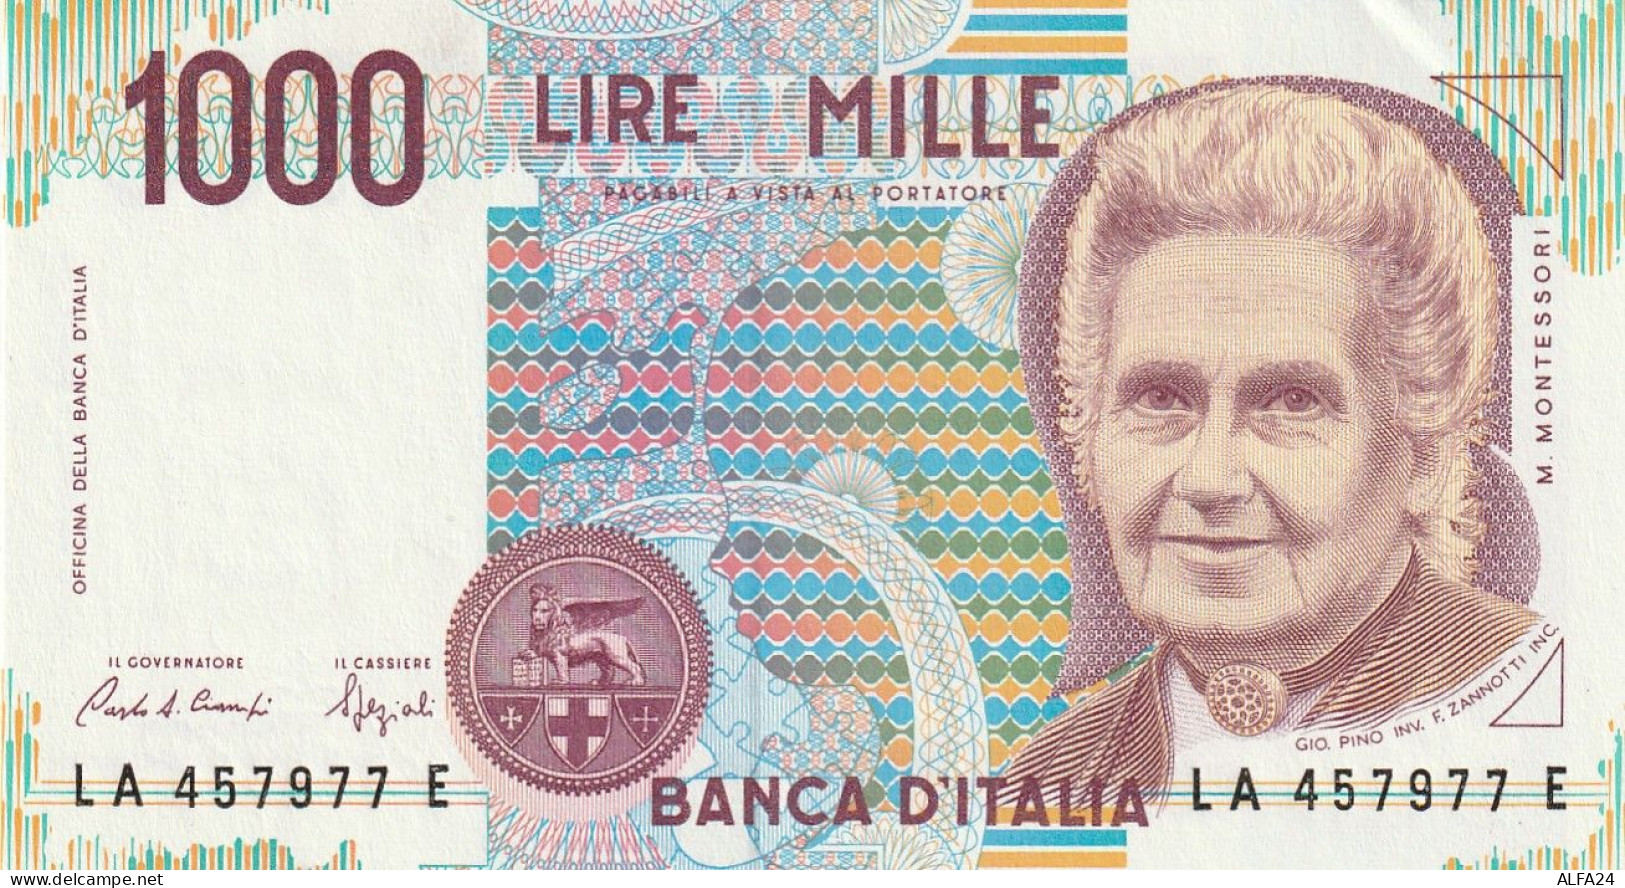 ITALIA LIRE 1000 MONTESSORI UNC (ZK1774 - 1000 Liras